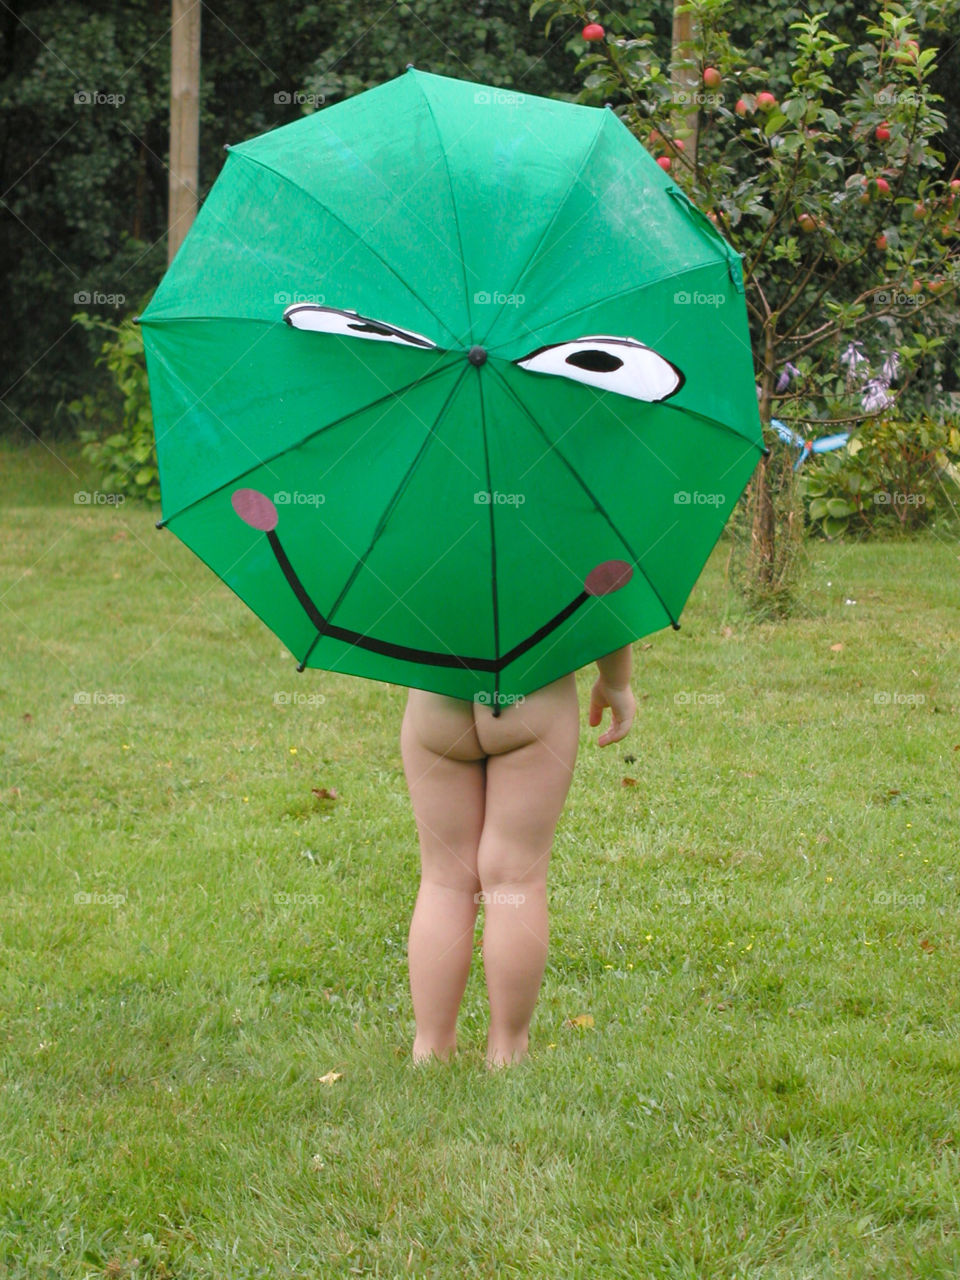 denmark. umbrella. rain. face. butt. boy. garden by snutten